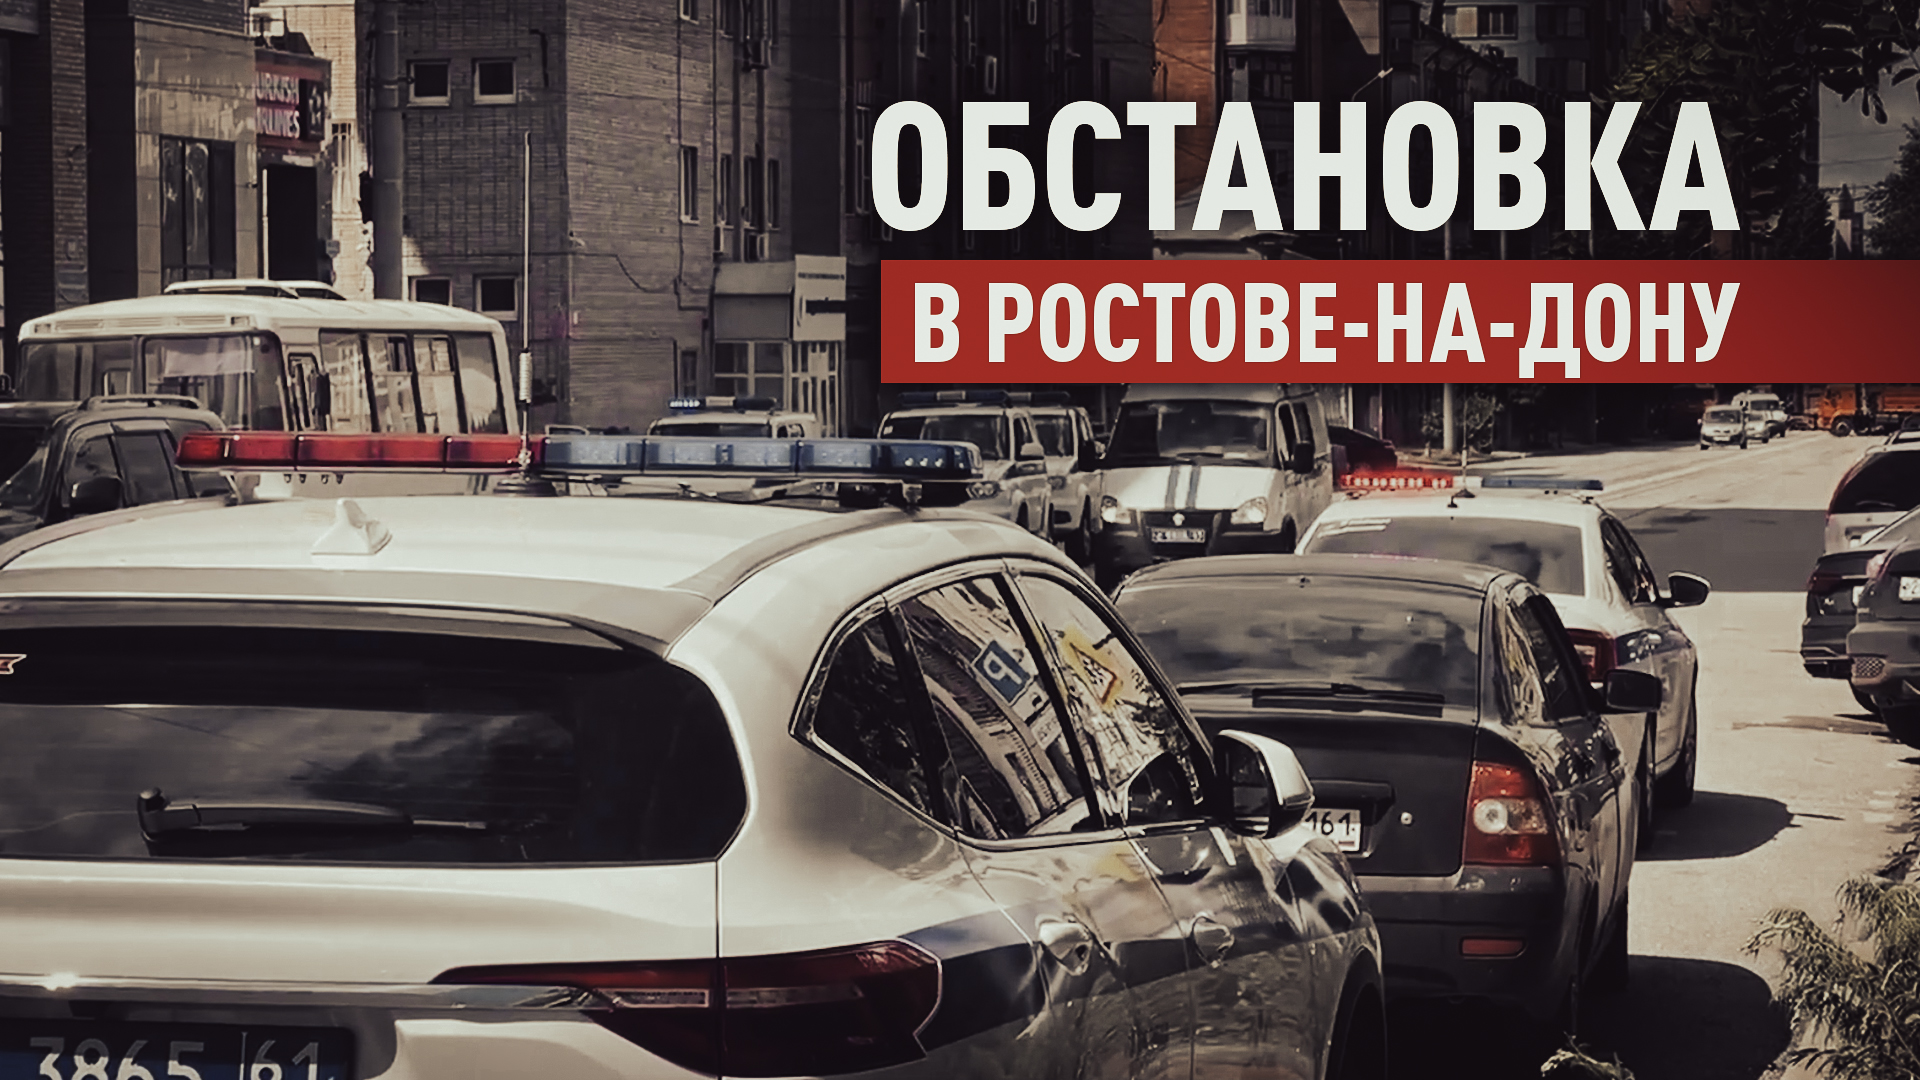 Обстановка в Ростове-на-Дону, где заключённые взяли в заложники двух сотрудников СИЗО — видео